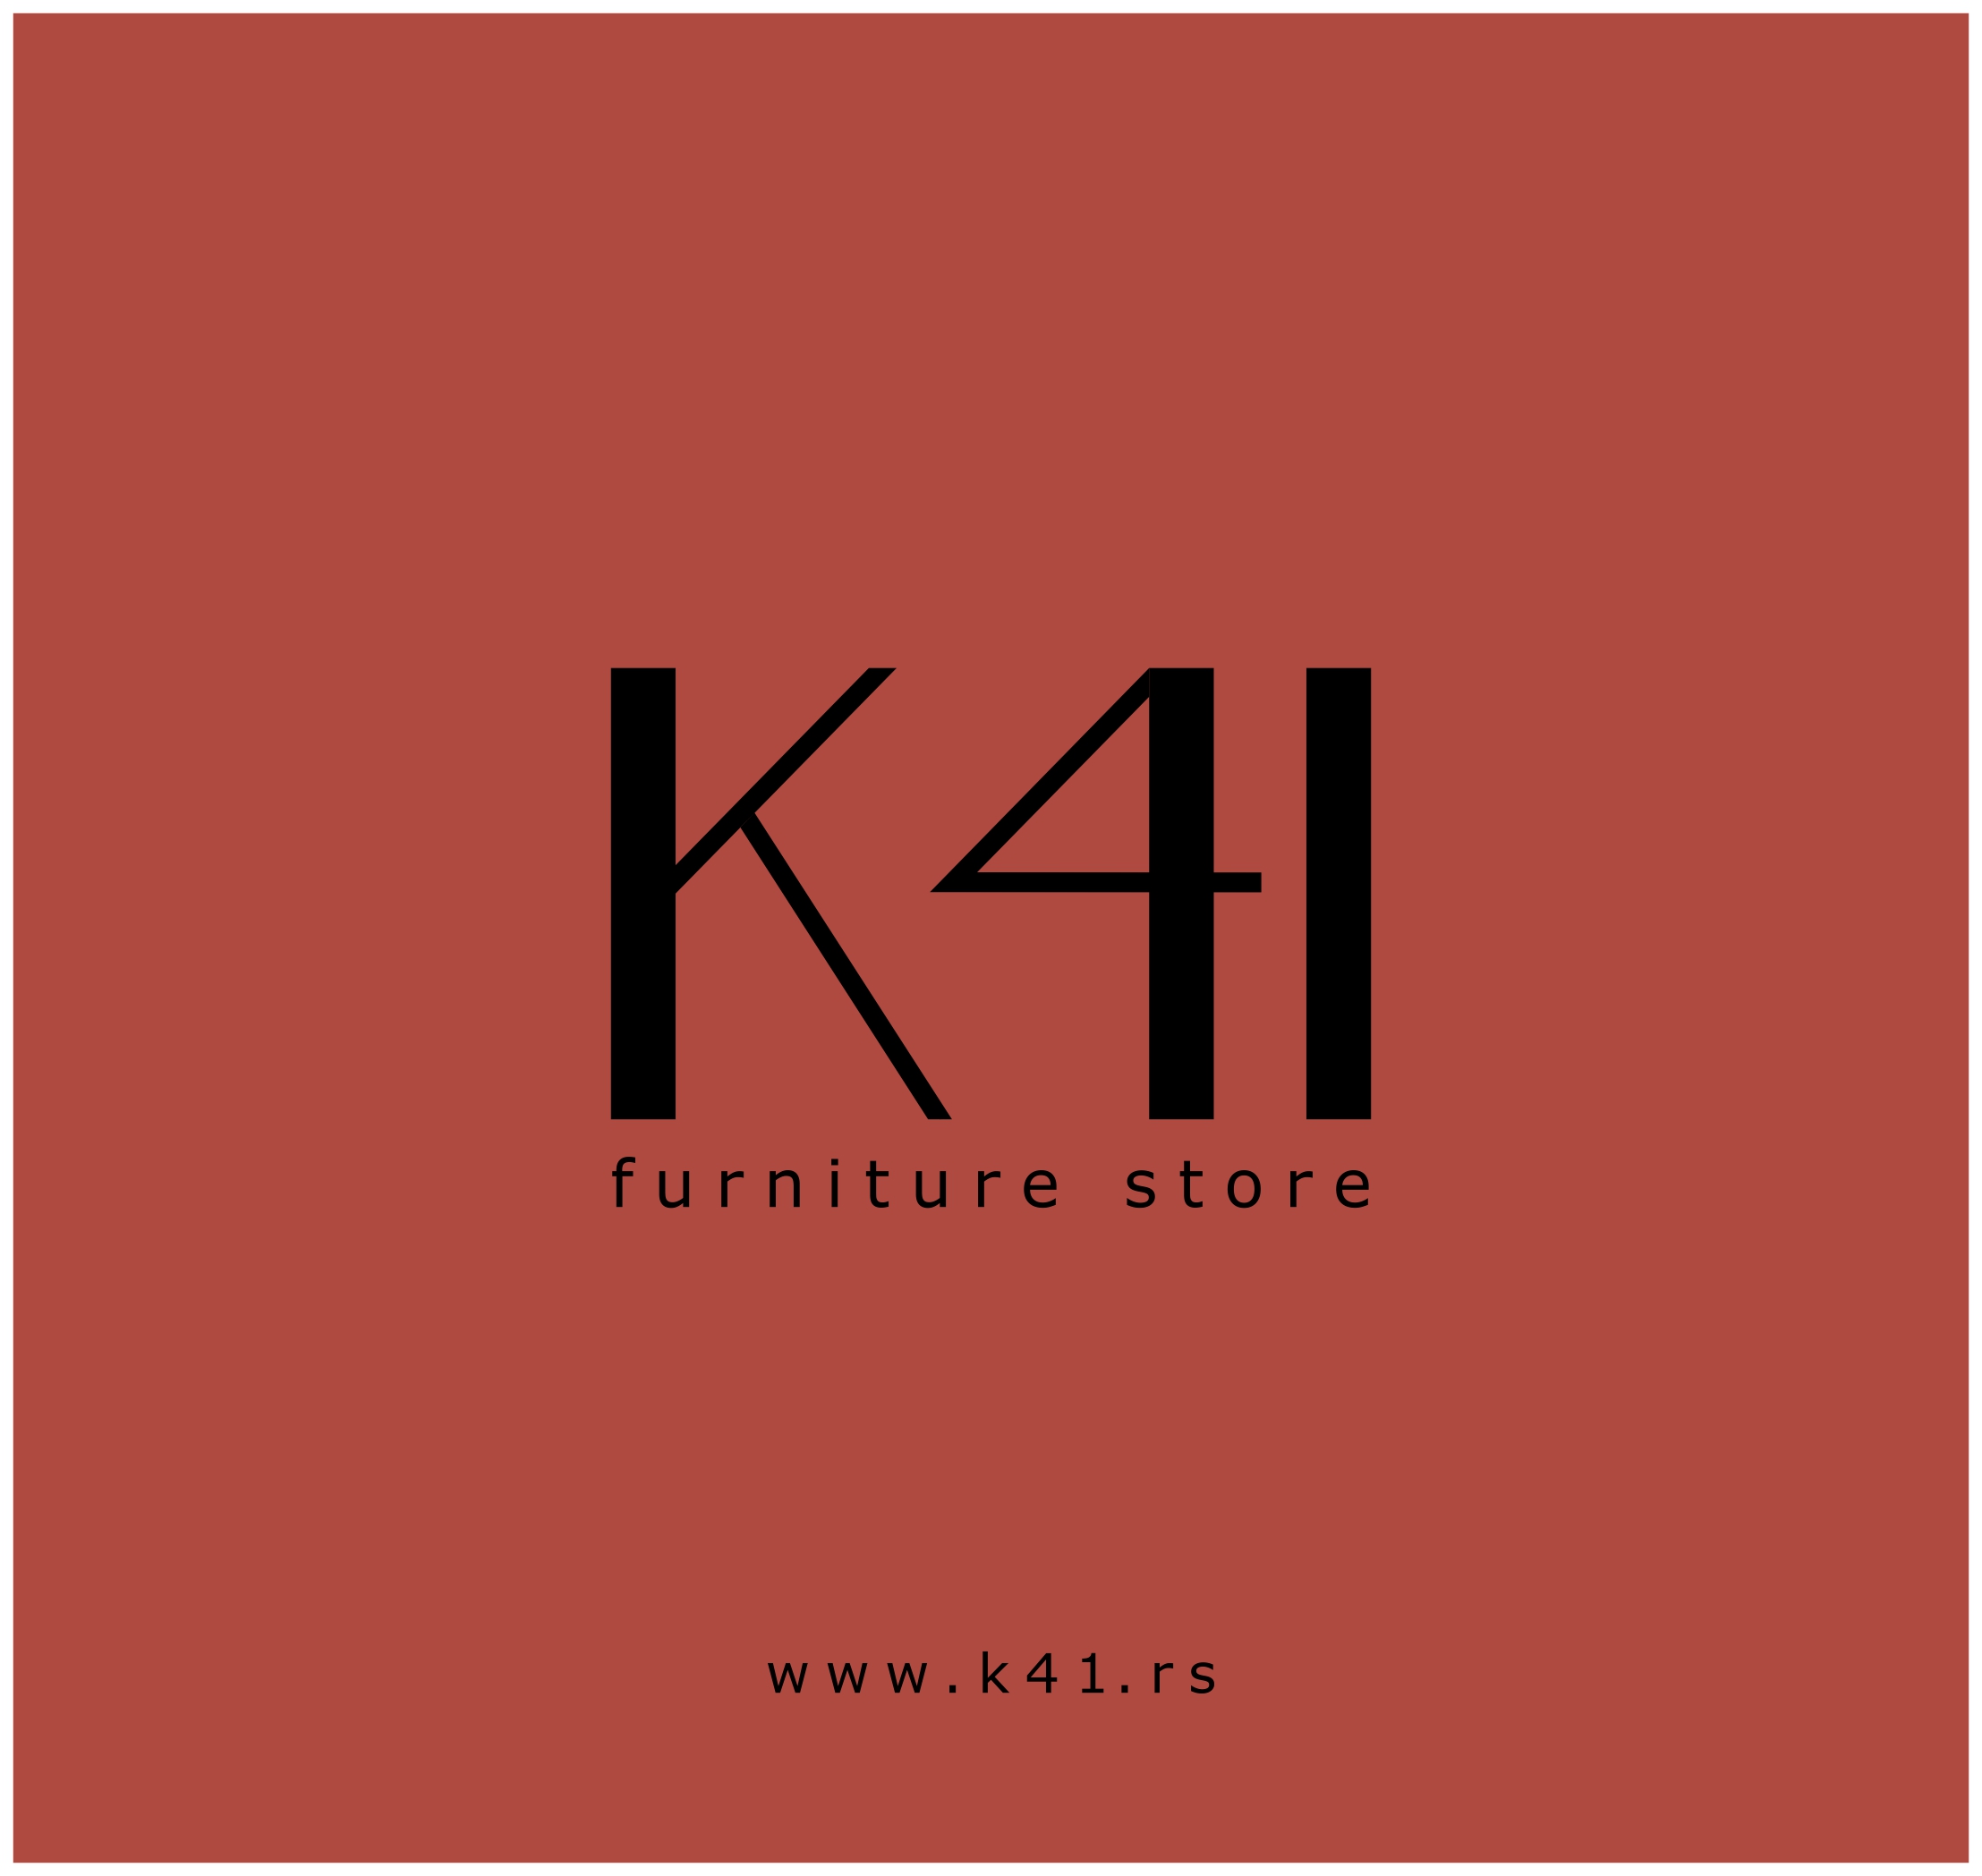 K41 Furniture Store